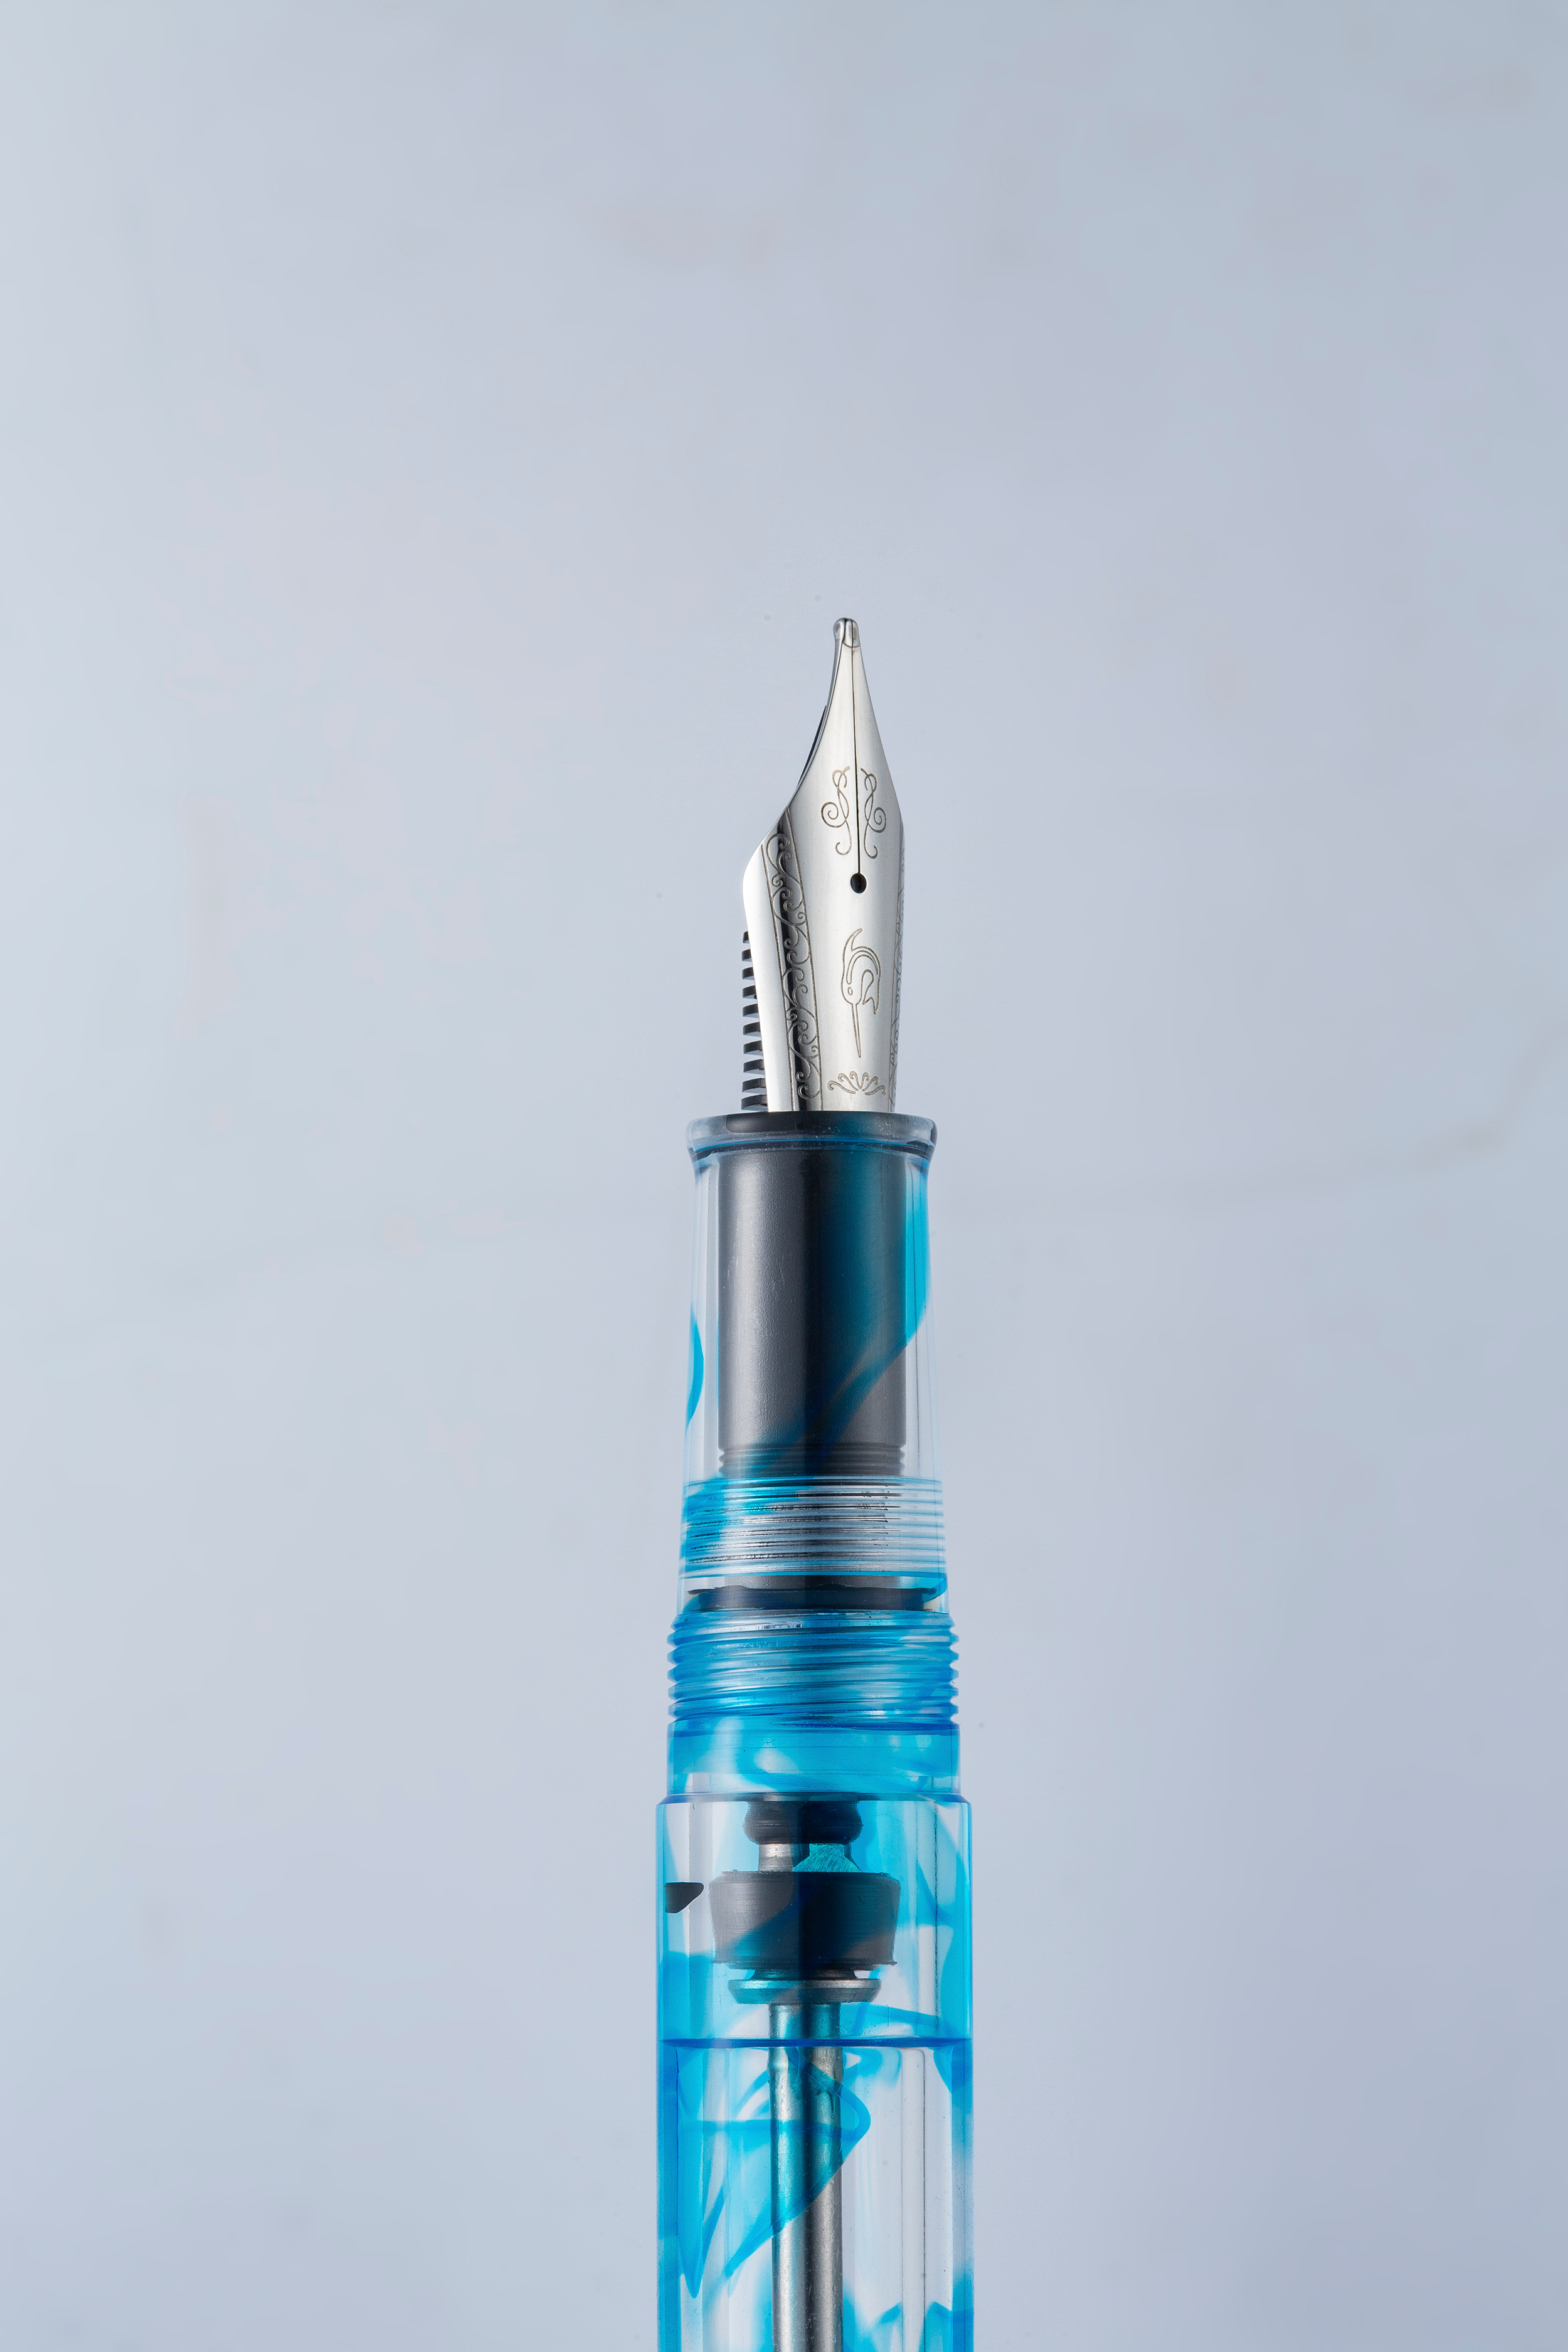 Nahvalur Original Plus Azureus Blue Fountain Pen - Pencraft the boutique